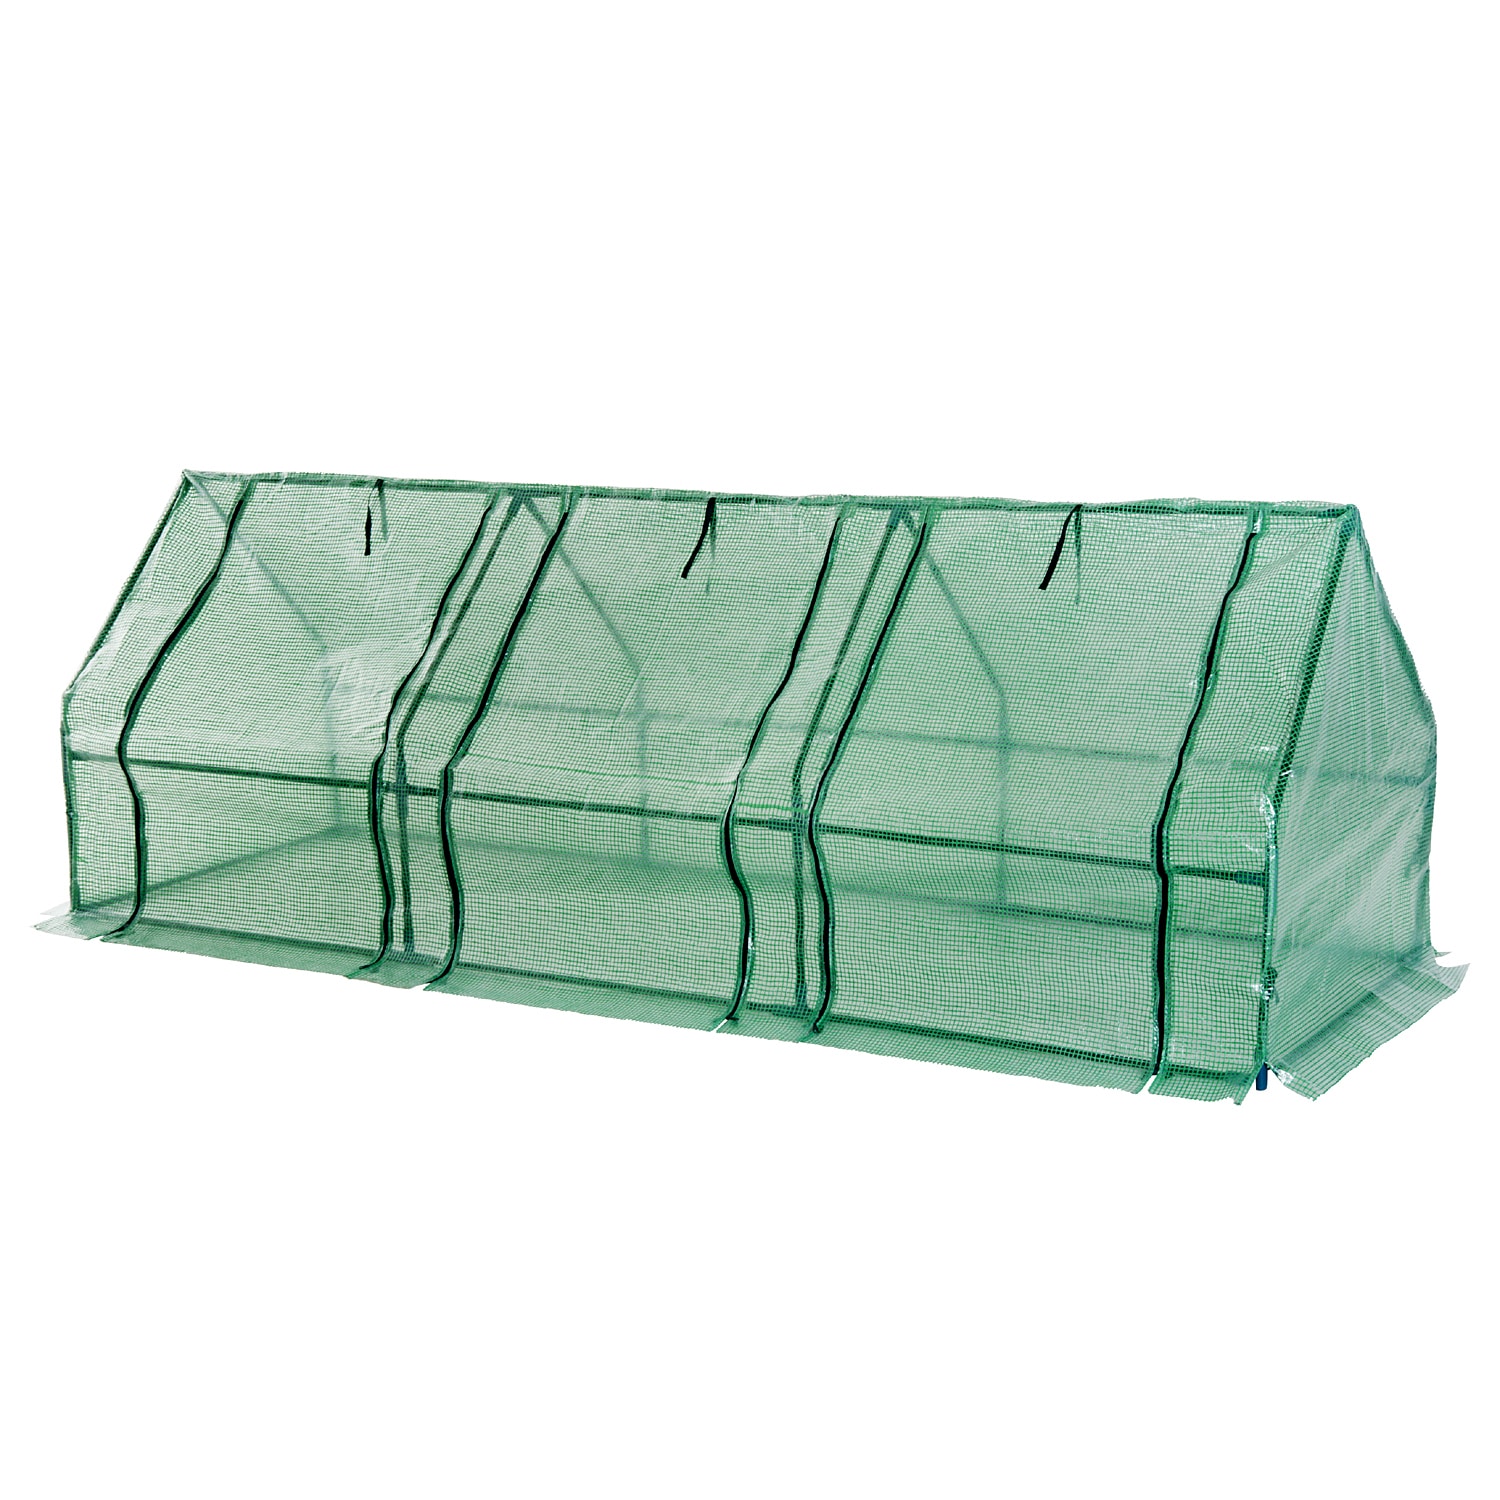 Outsunny Gewächshaus mit 3 seitlichen Rolltüren grün transparent 270 x 90 x 90 cm (LxBxH)